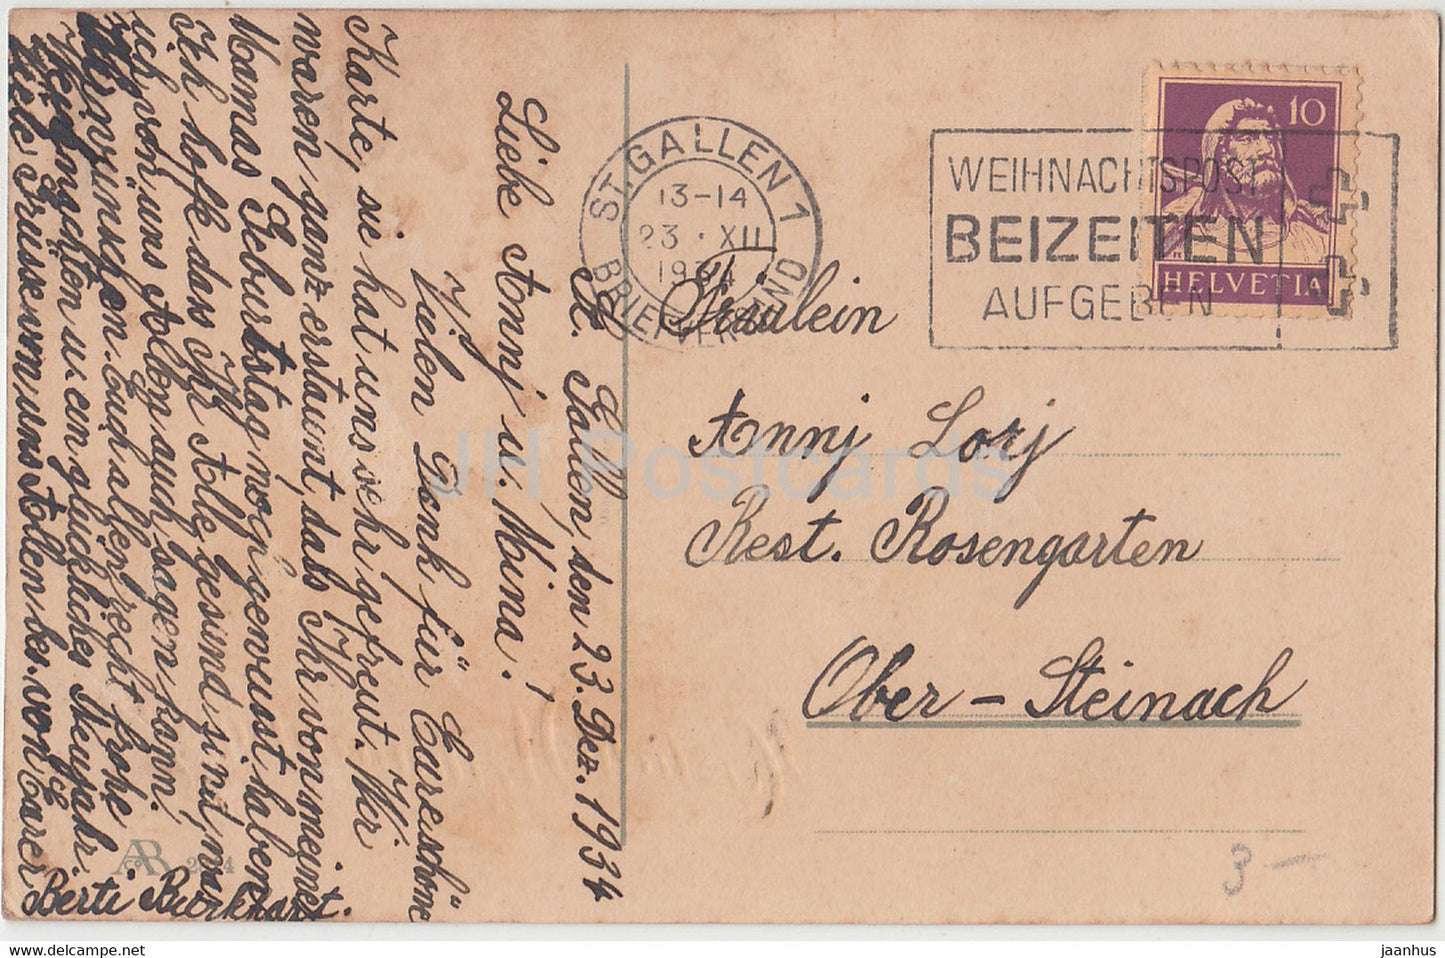 Carte de vœux de Noël - Herzliche Weihnachtsgrusse - hiver - maison - AR 2814 - carte postale ancienne - 1934 - Allemagne - utilisé